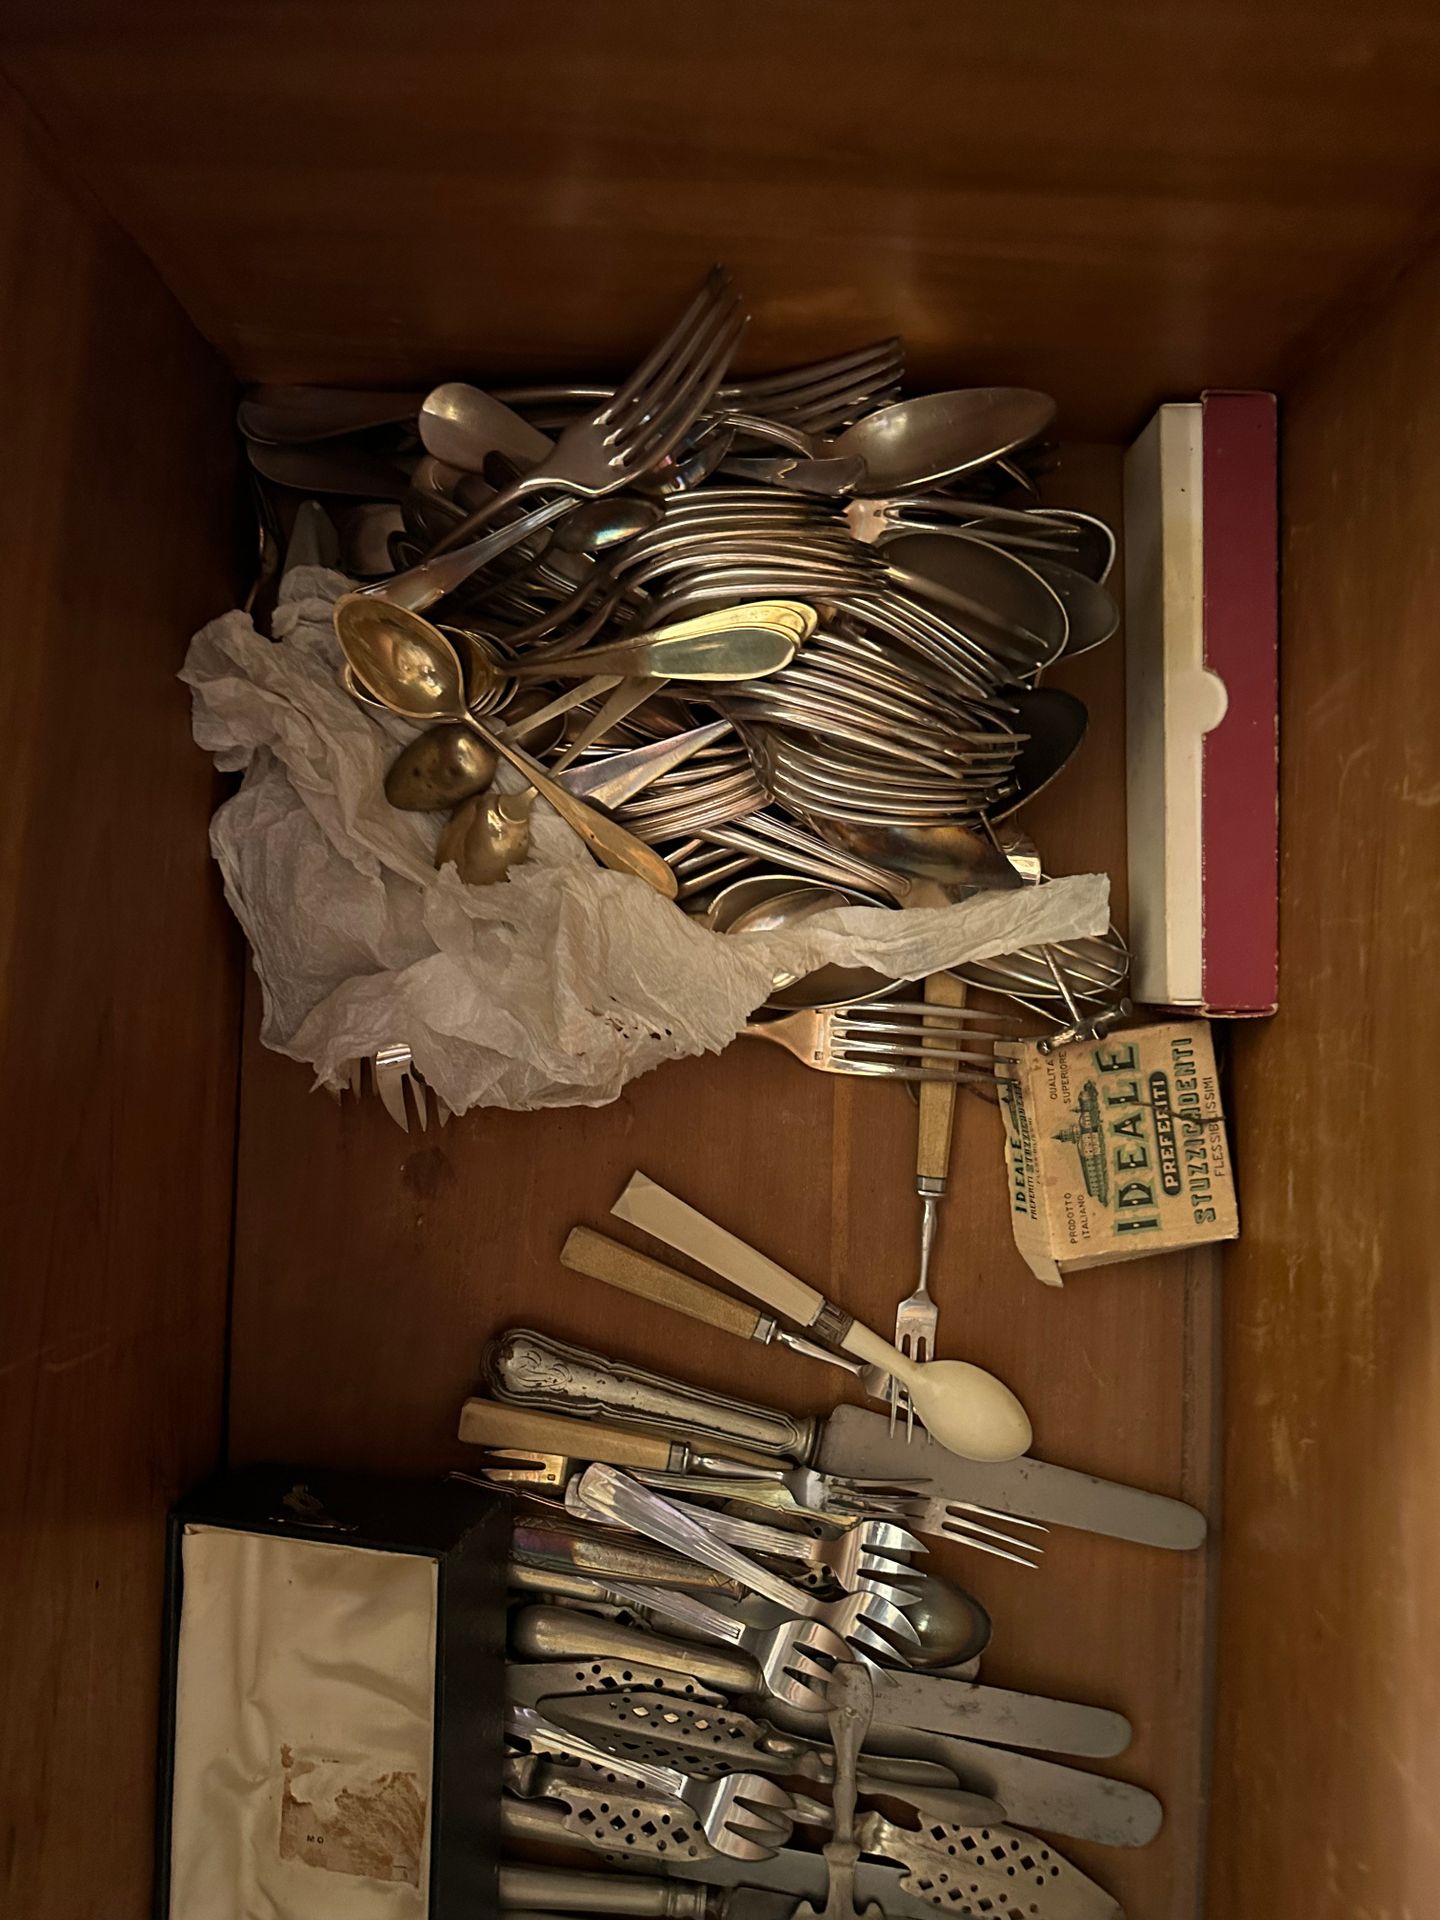 Fort lot de métal argenté 包括叉子、勺子、餐具